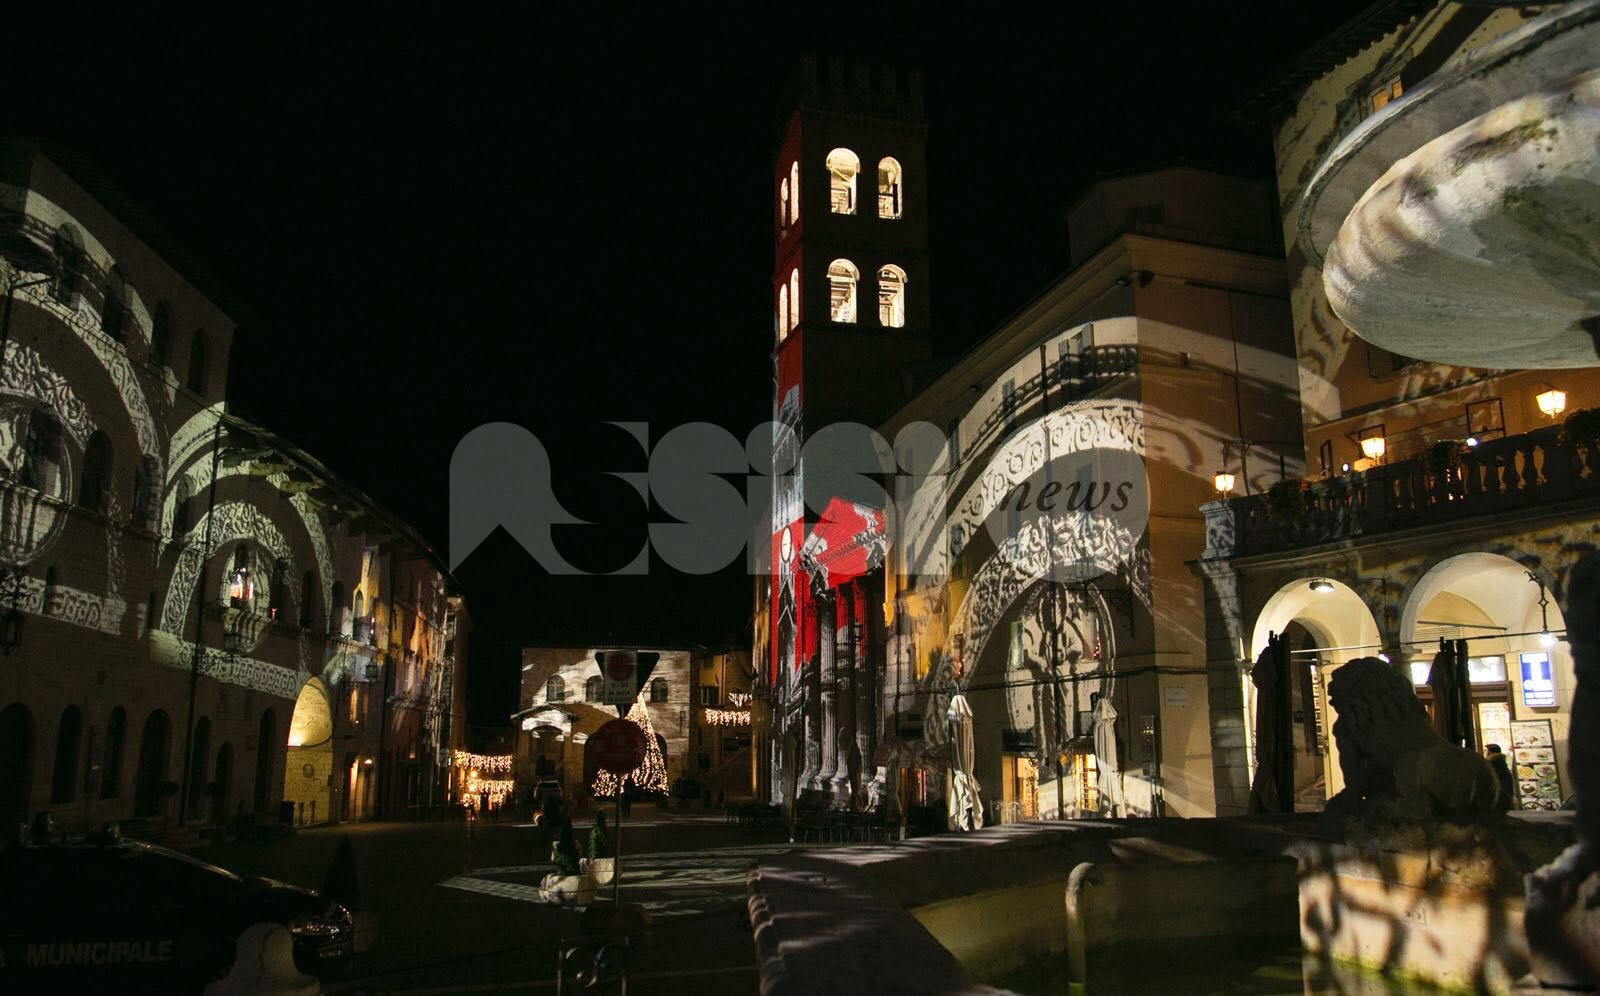 Il programma del Natale ad Assisi 2018: cosa vedere e fare, eventi e attrazioni